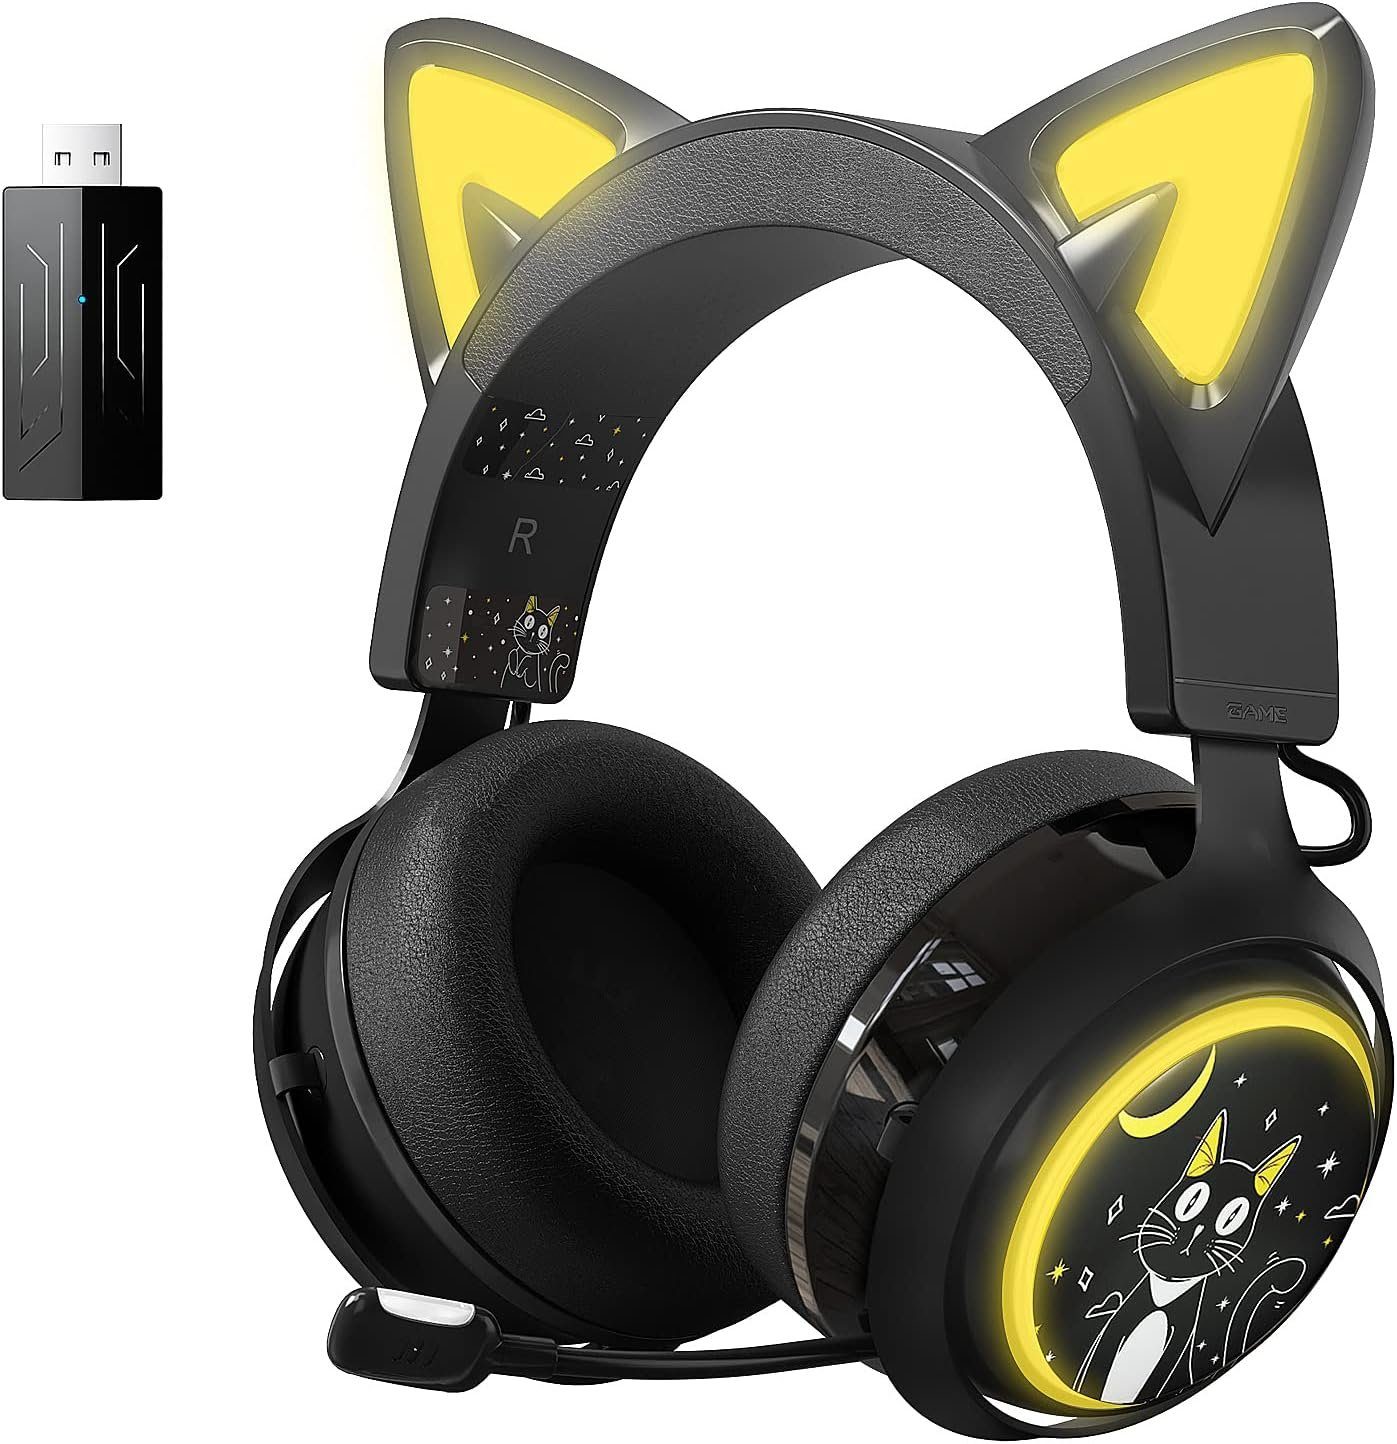 Gaming-Headset für (Eingebautes klare Sprachkommunikation während des mit "Drahtloses Mikrofon Gaming-Headset Surround und mit Sound Cat-Ears) Somikon , Rauschunterdrückung Spielens. 7.1